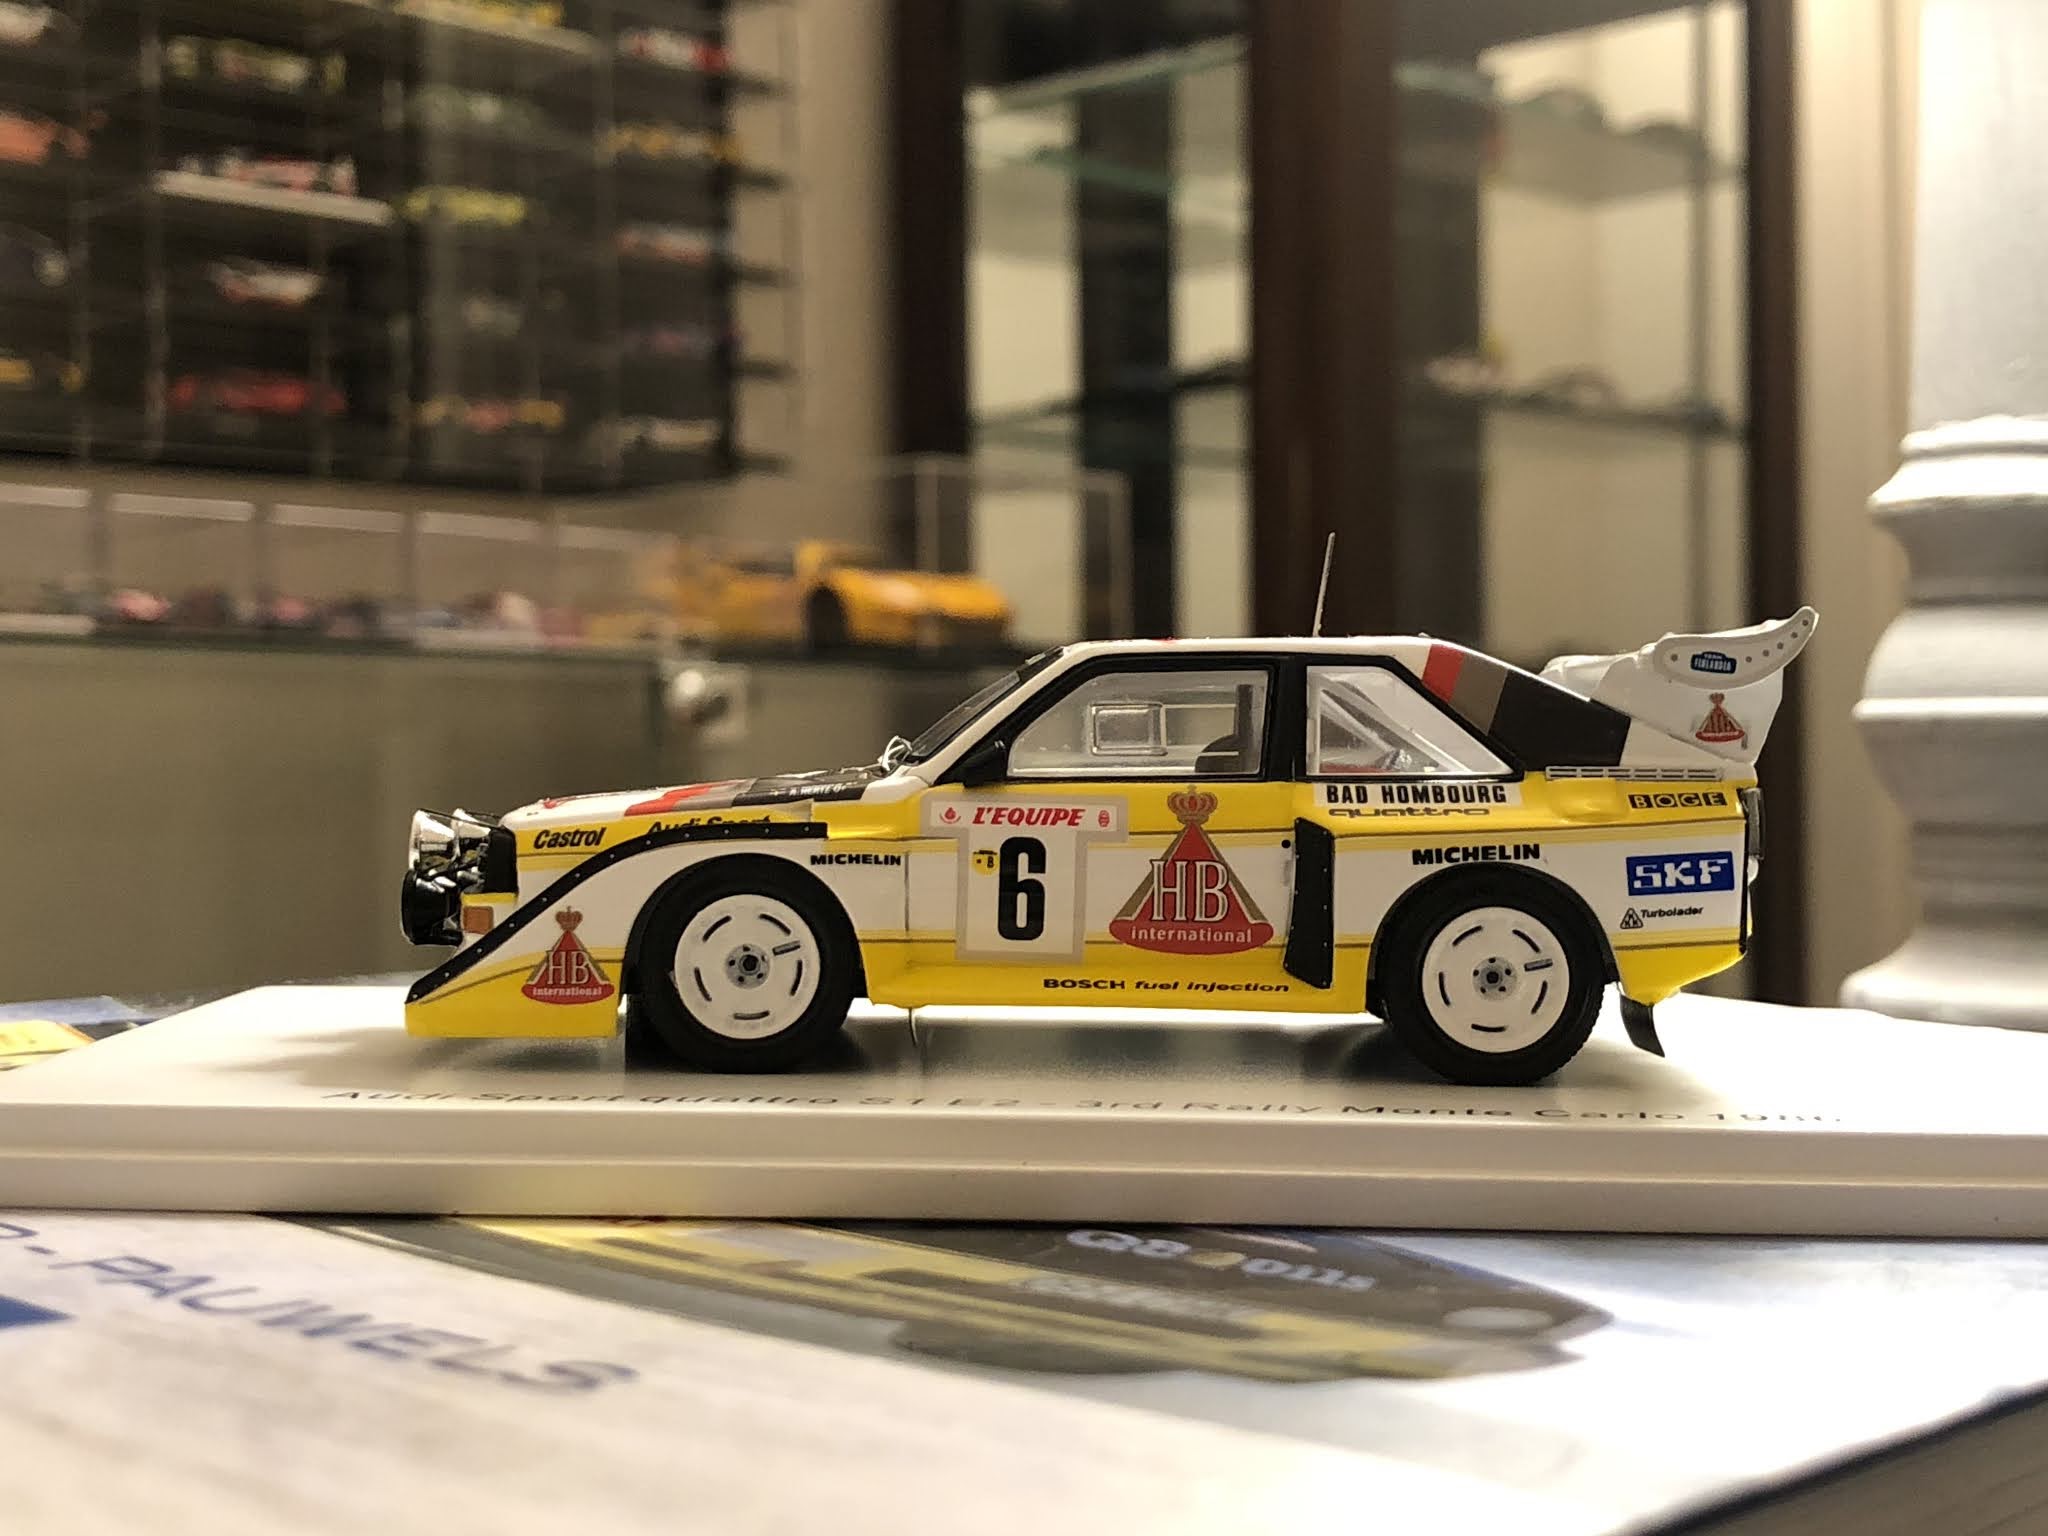 Les voitures du Rallye Monte-Carlo en miniatures! - Mininches